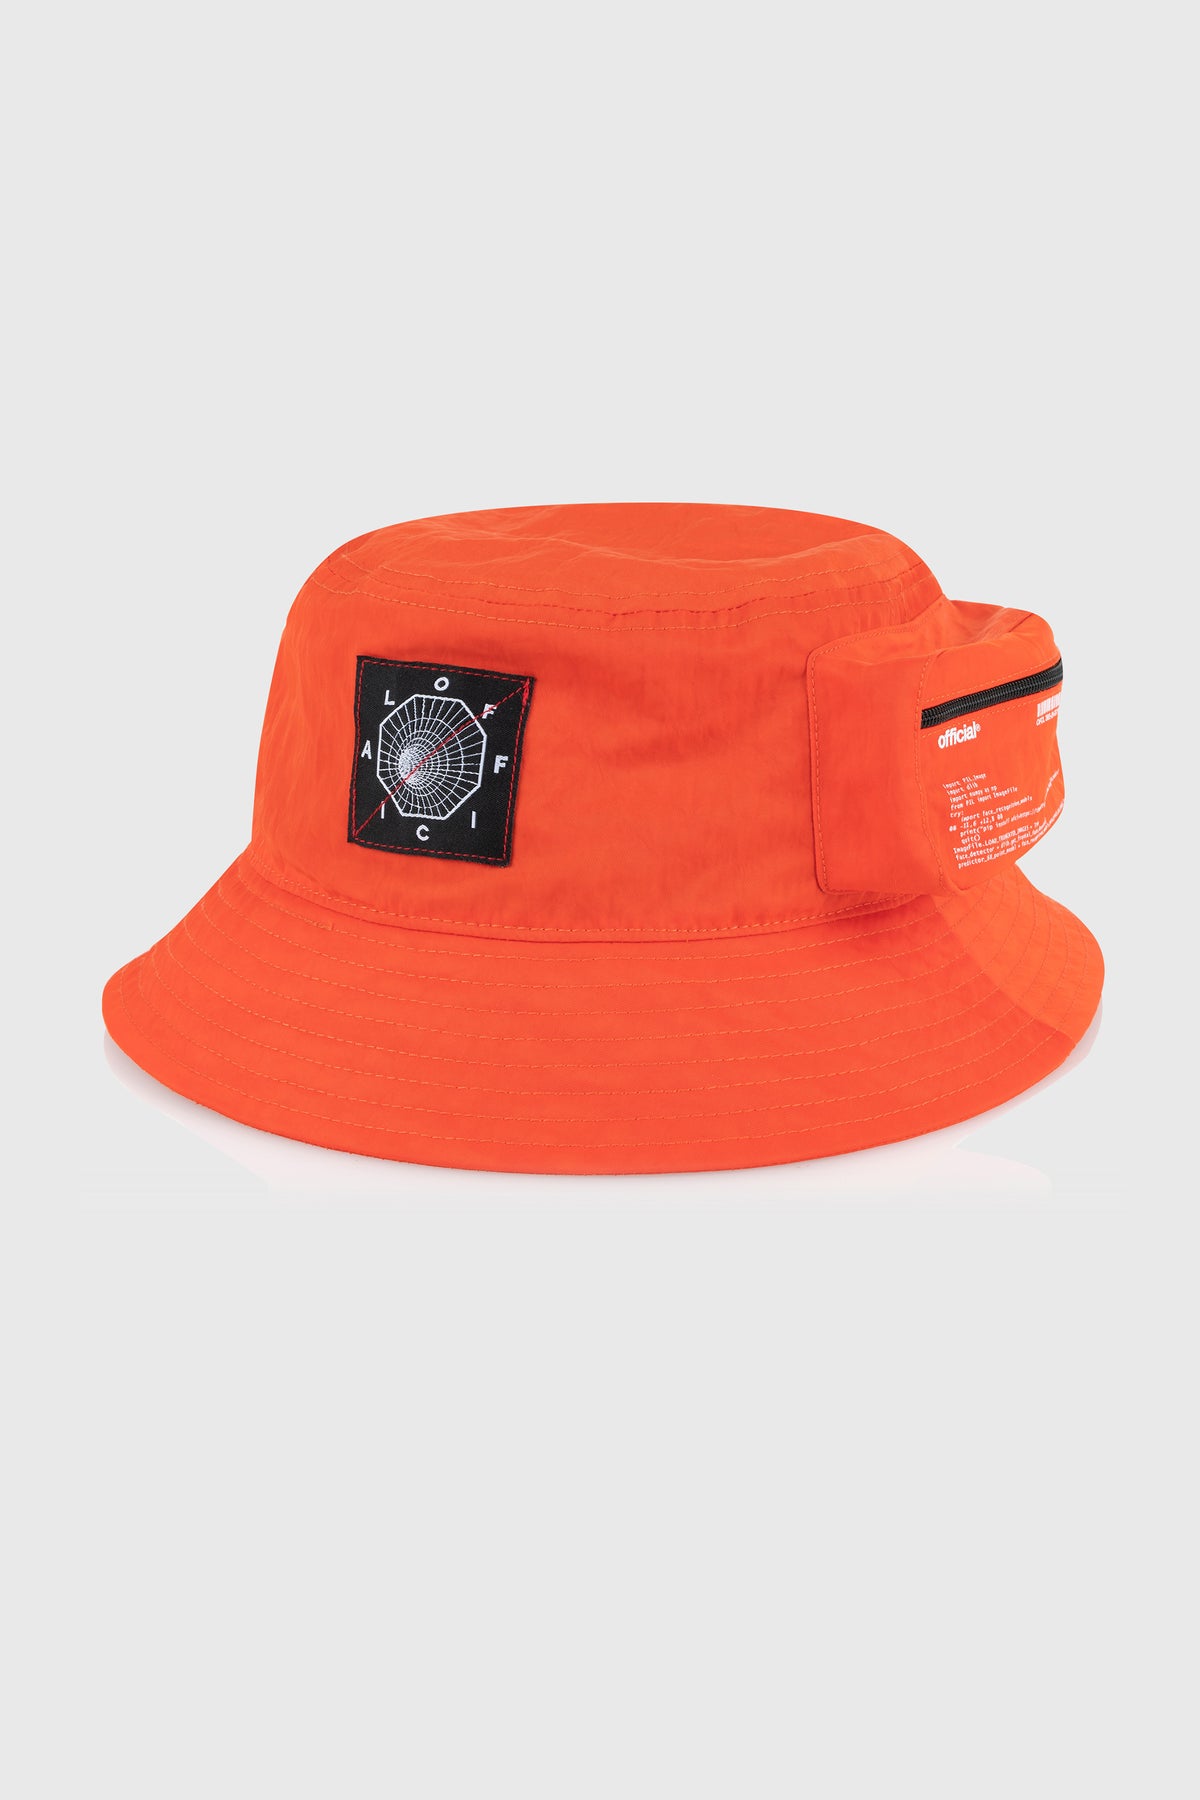 Brand Hat – Official Bucket The Cargo Bio-Tracker (Orange)